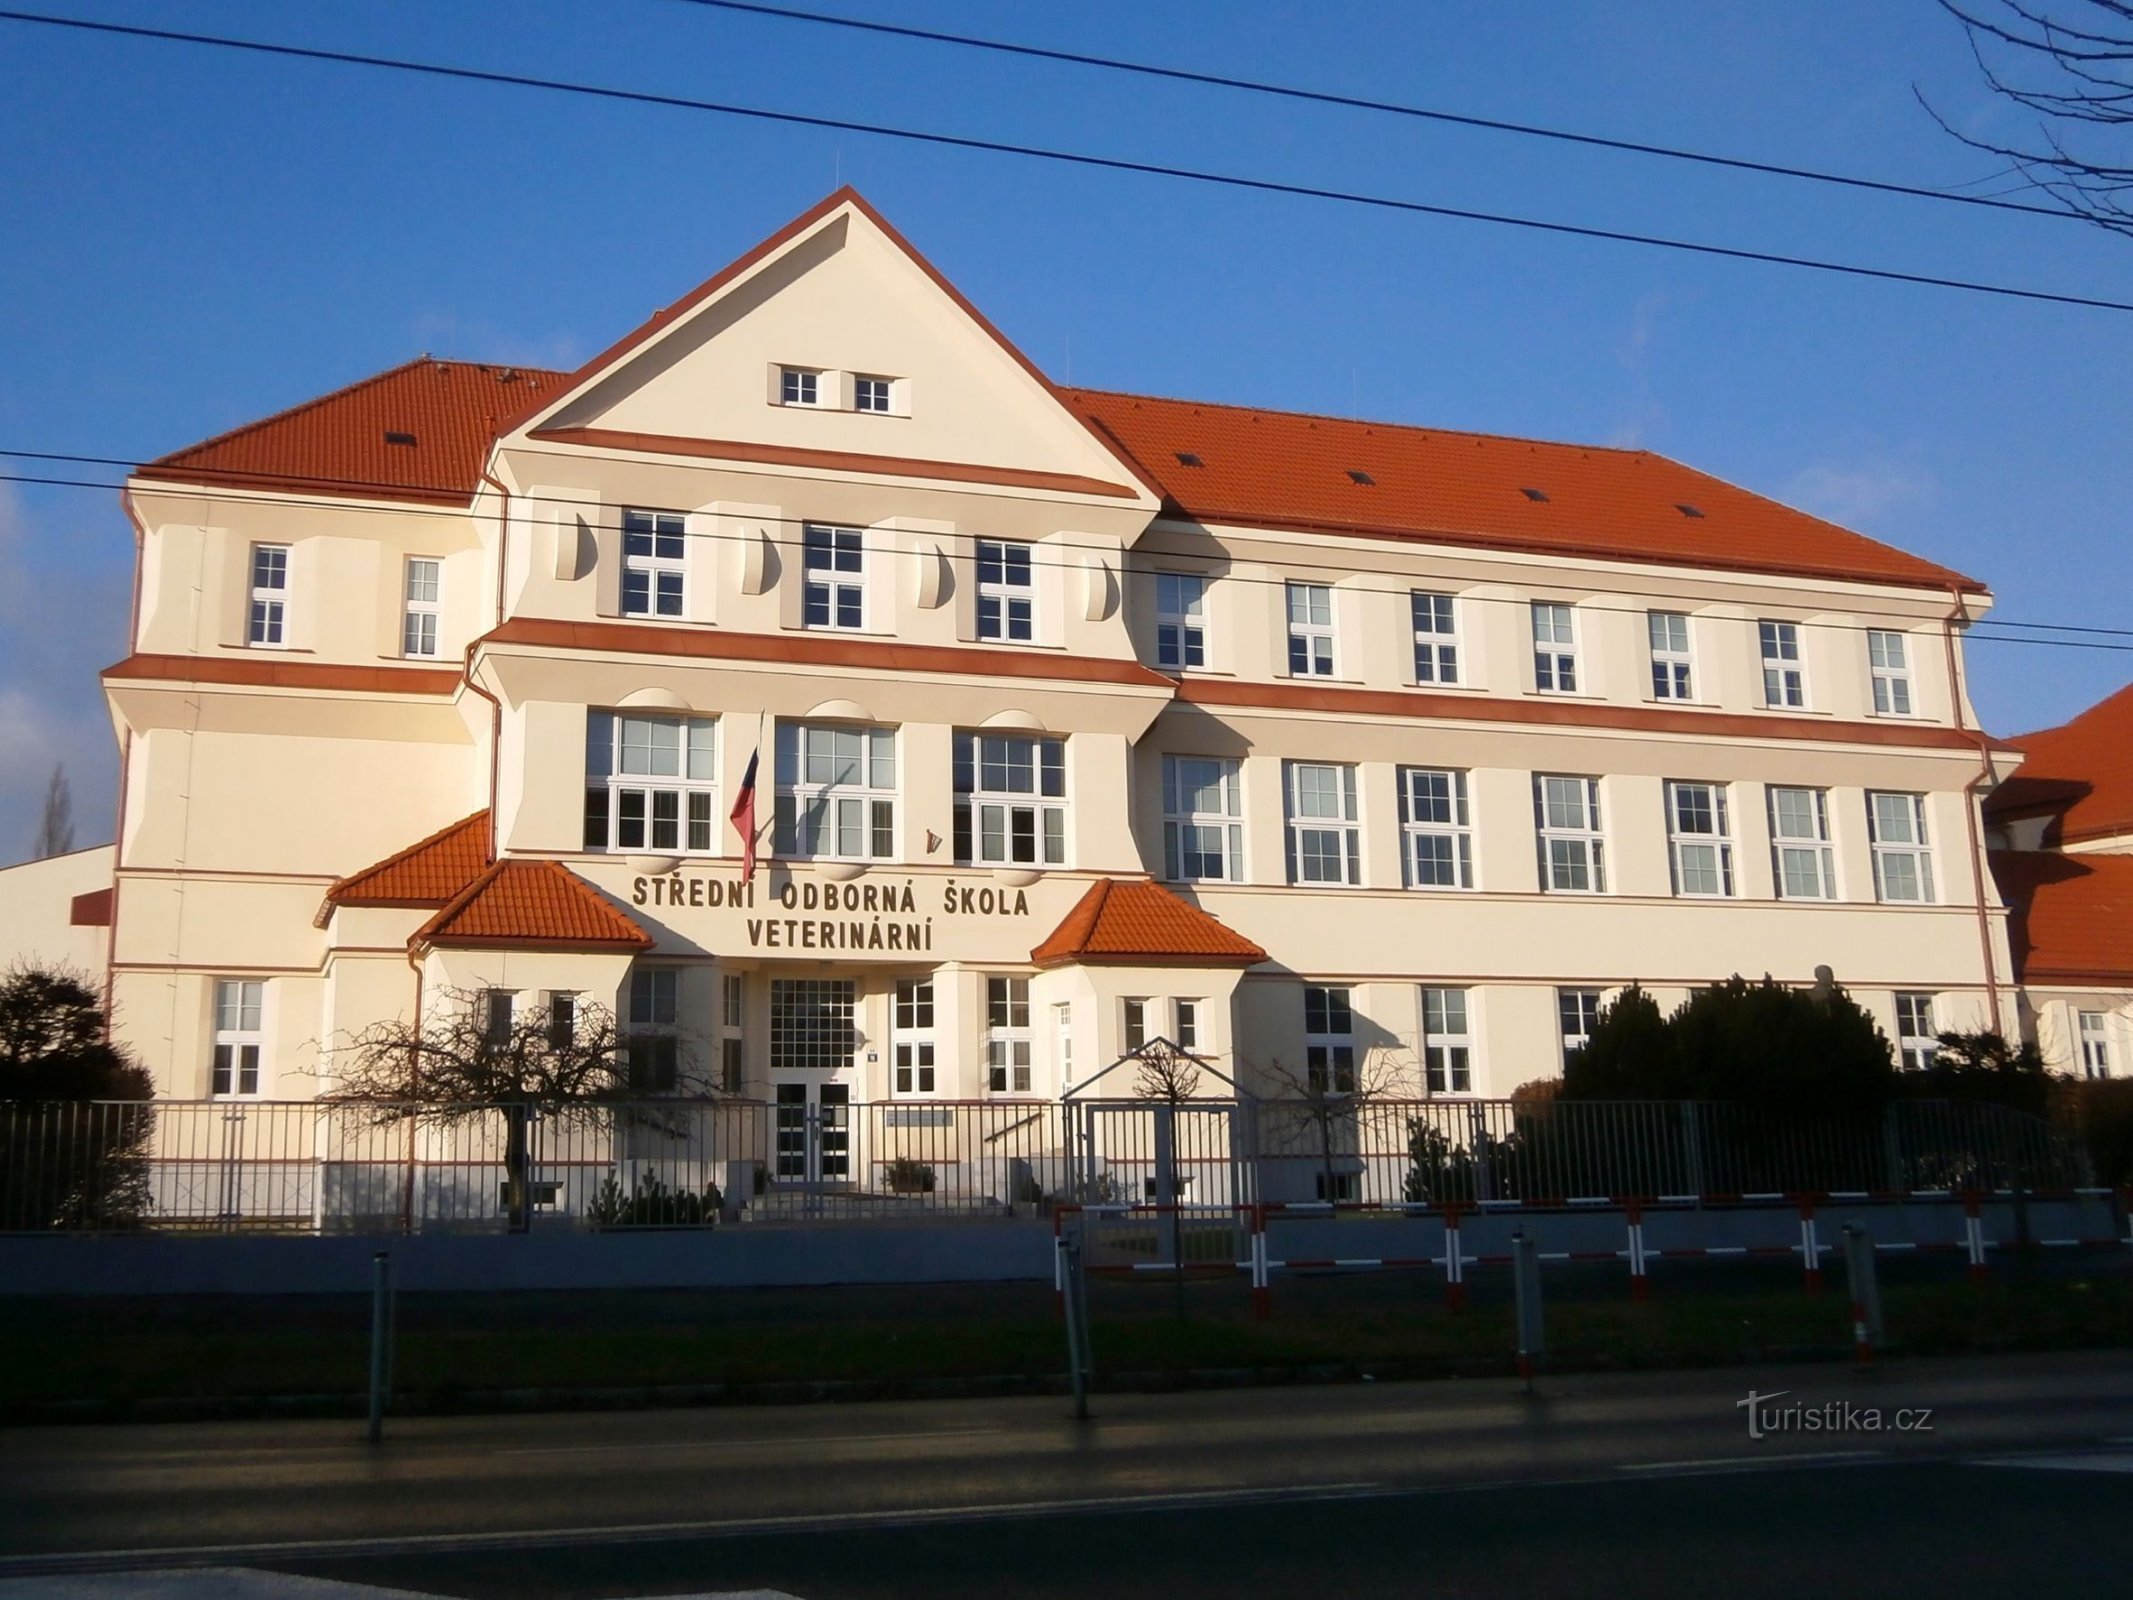 Sadašnji izgled zgrade Ekonomske strukovne škole u Kuklenyu (Hradec Králové, 4.1.2015. siječnja XNUMX.)